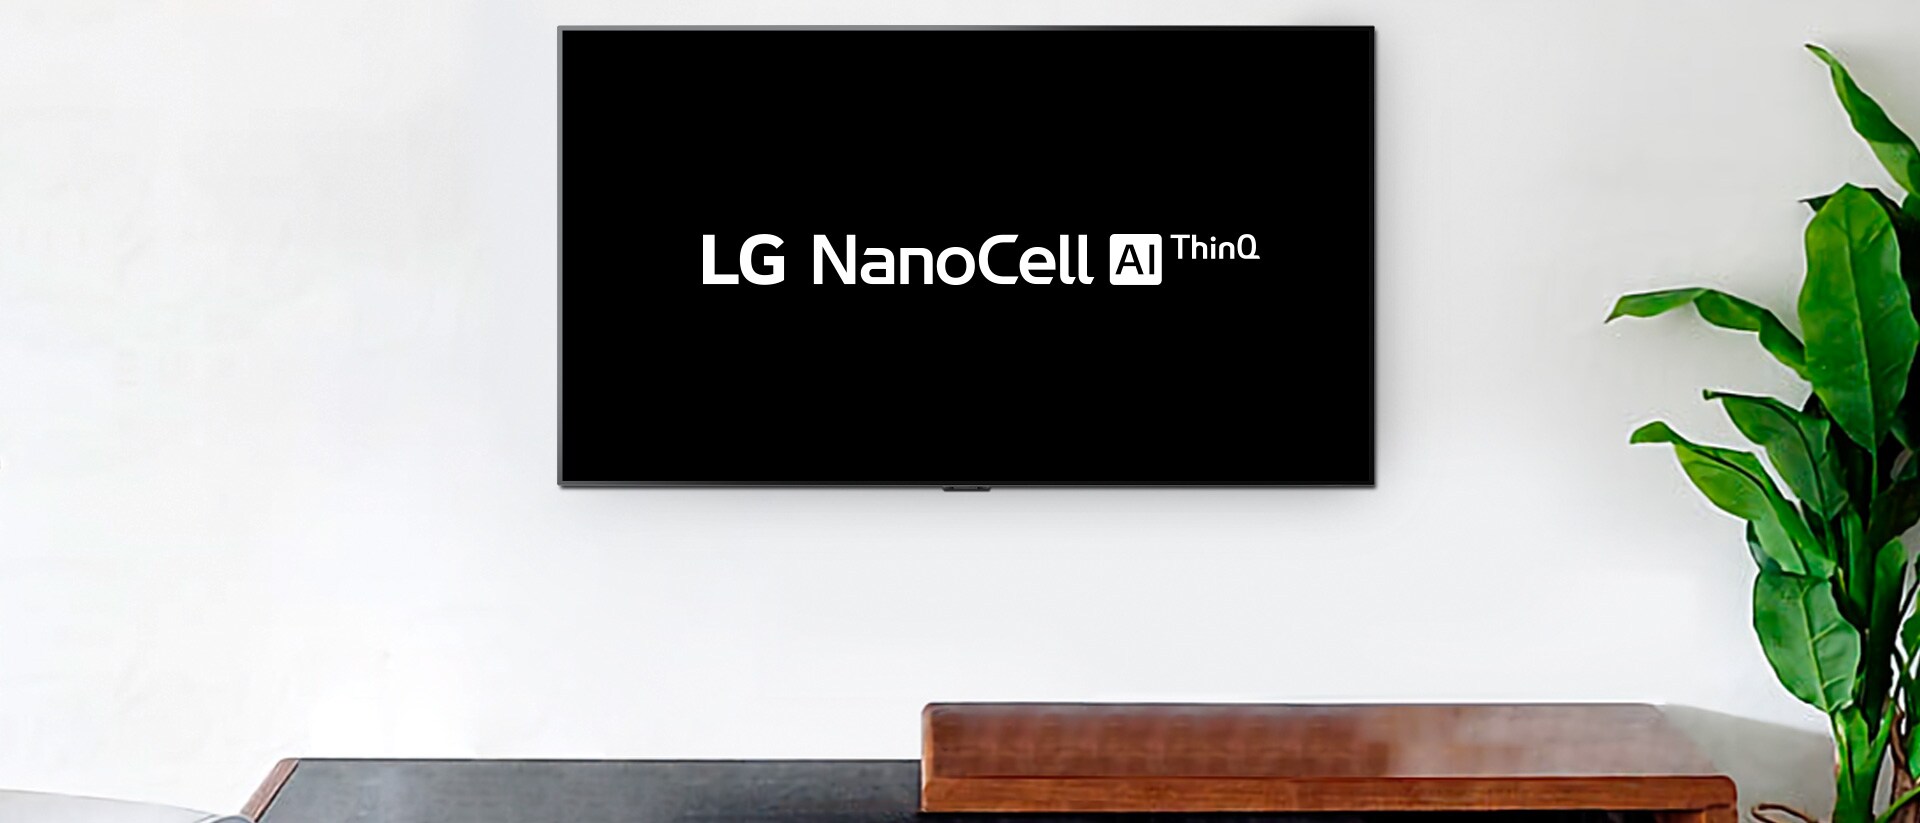 טלוויזיה תלויה על קיר מציגה את סמל LG OLED AI ThinQ על רקע שחור